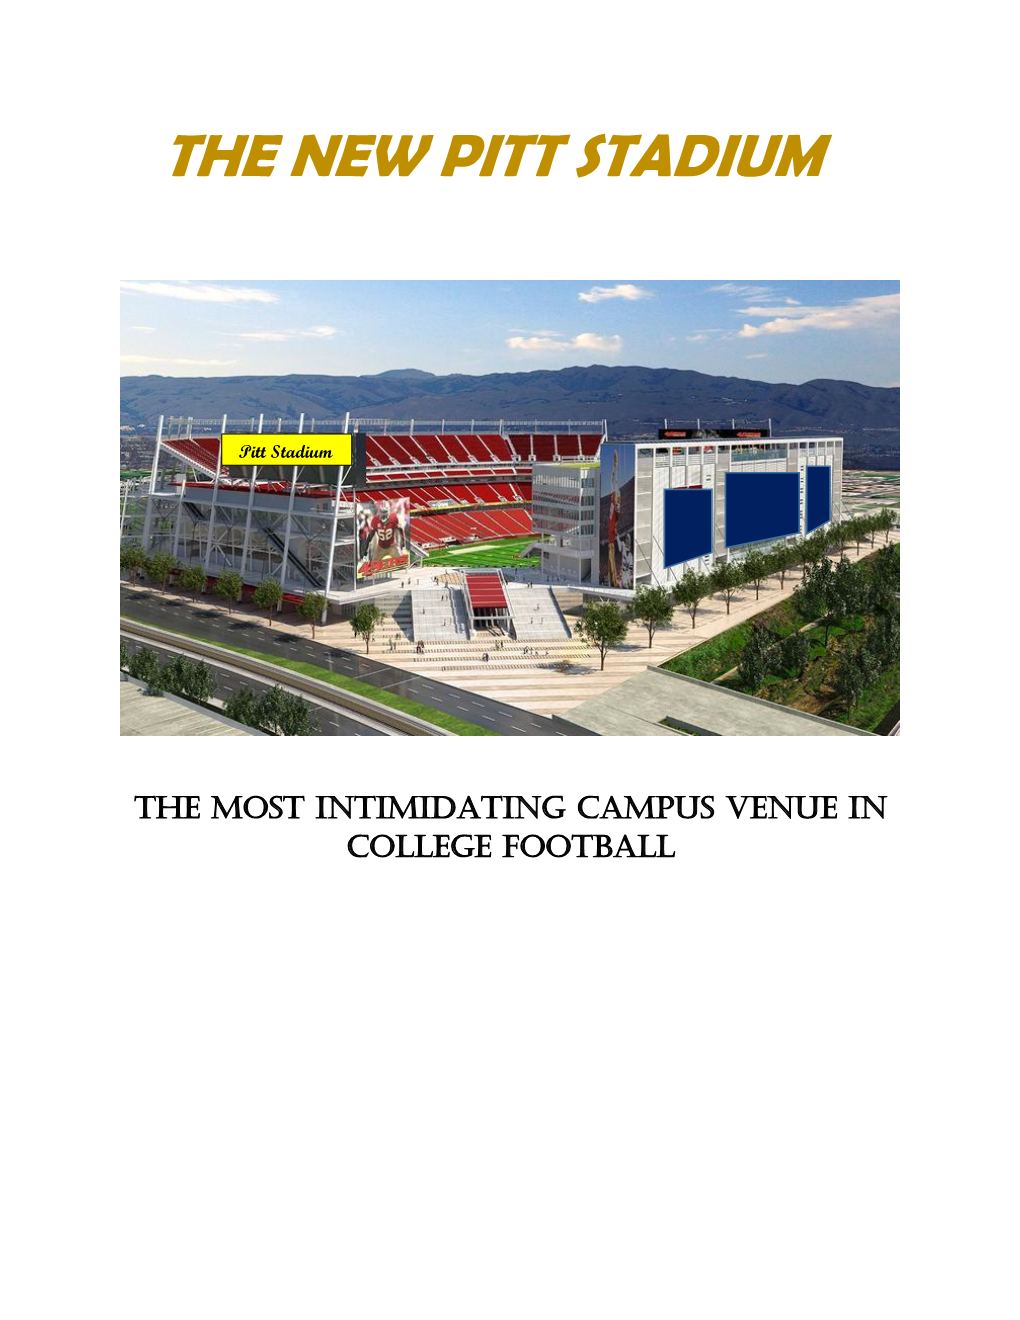 The New Pitt Stadium